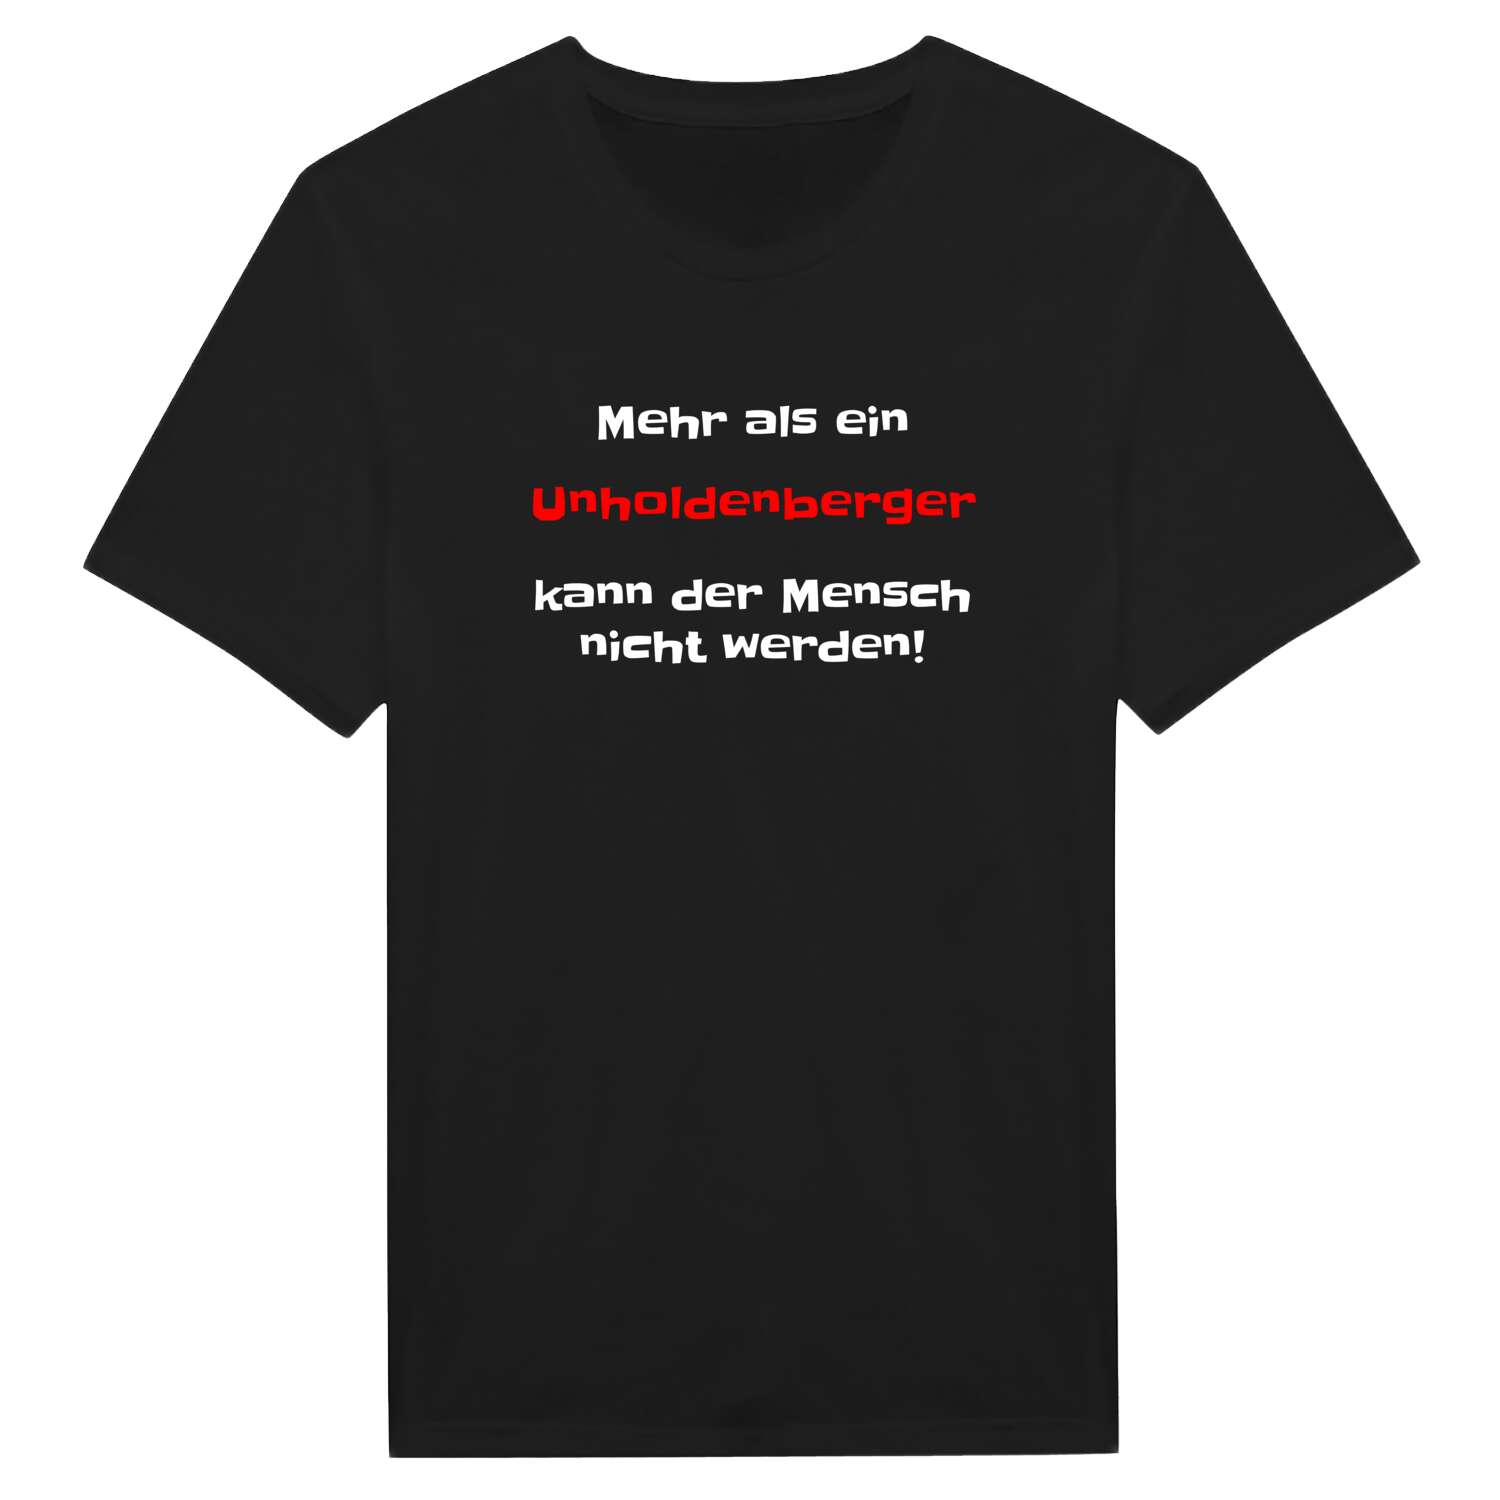 Unholdenberg T-Shirt »Mehr als ein«